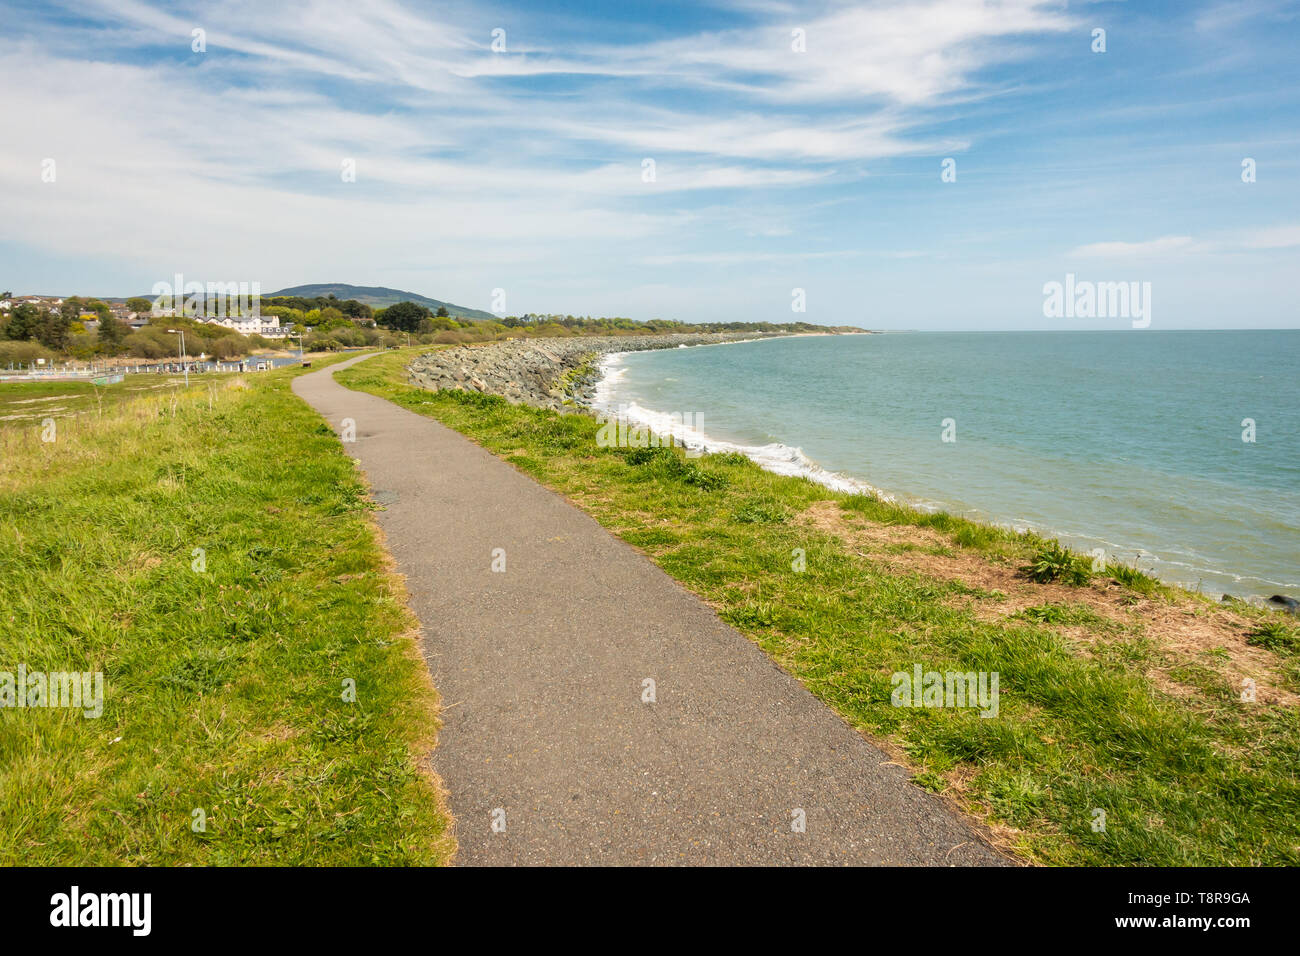 Arklow coastline in Ireland Stock Photo